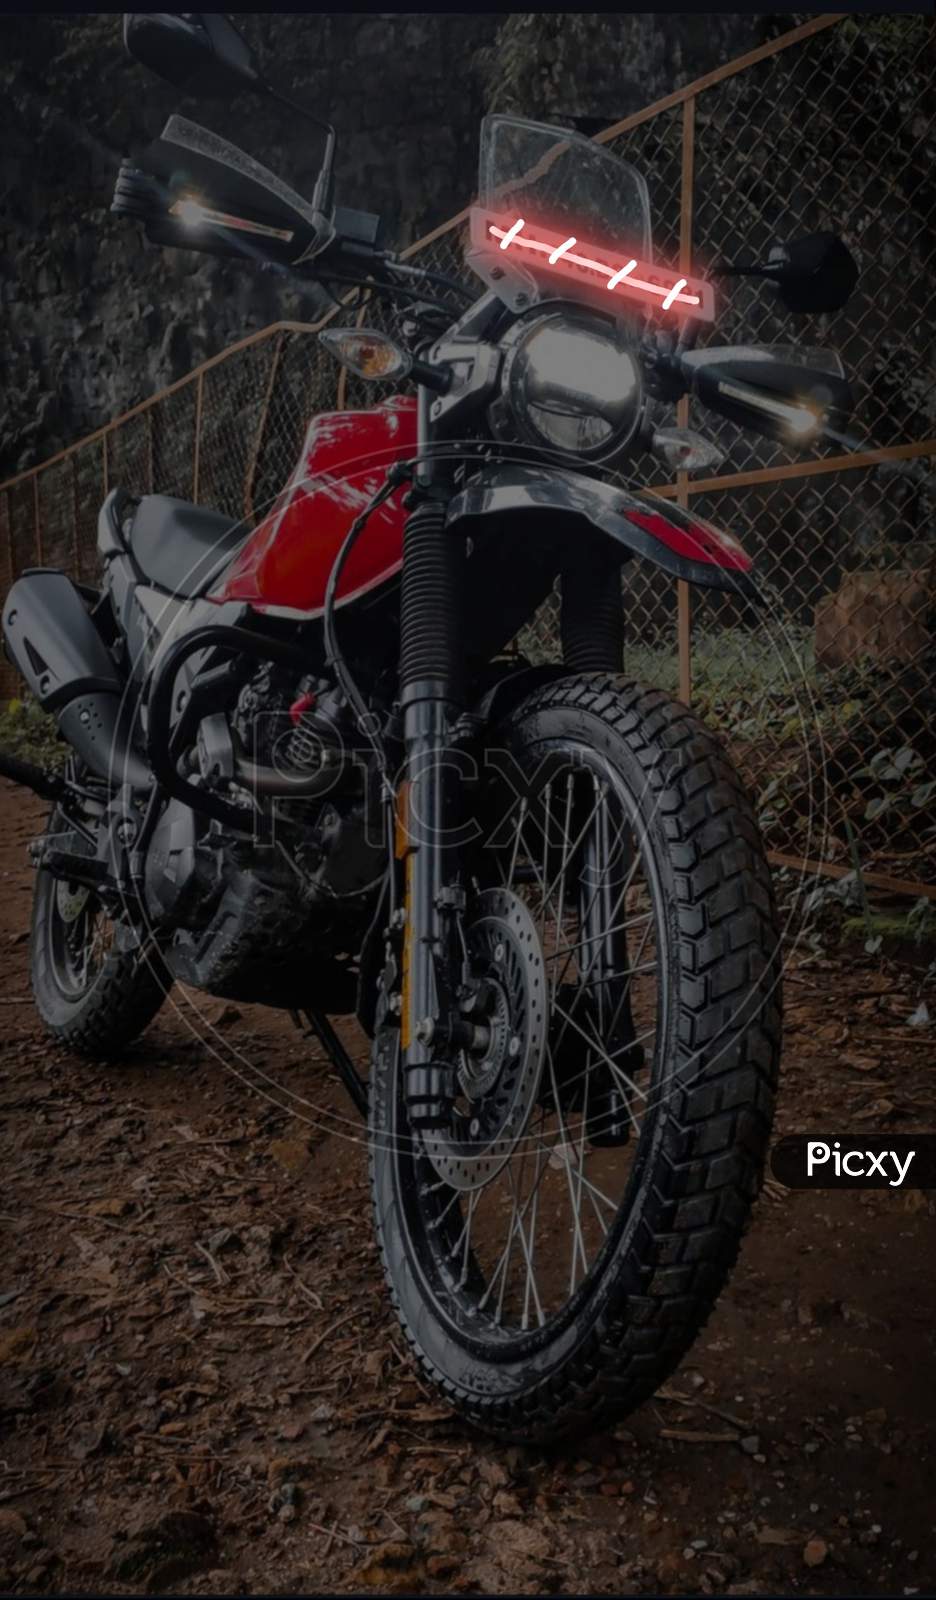 Hero xpulse 200 - Motorcycles - 1741392857